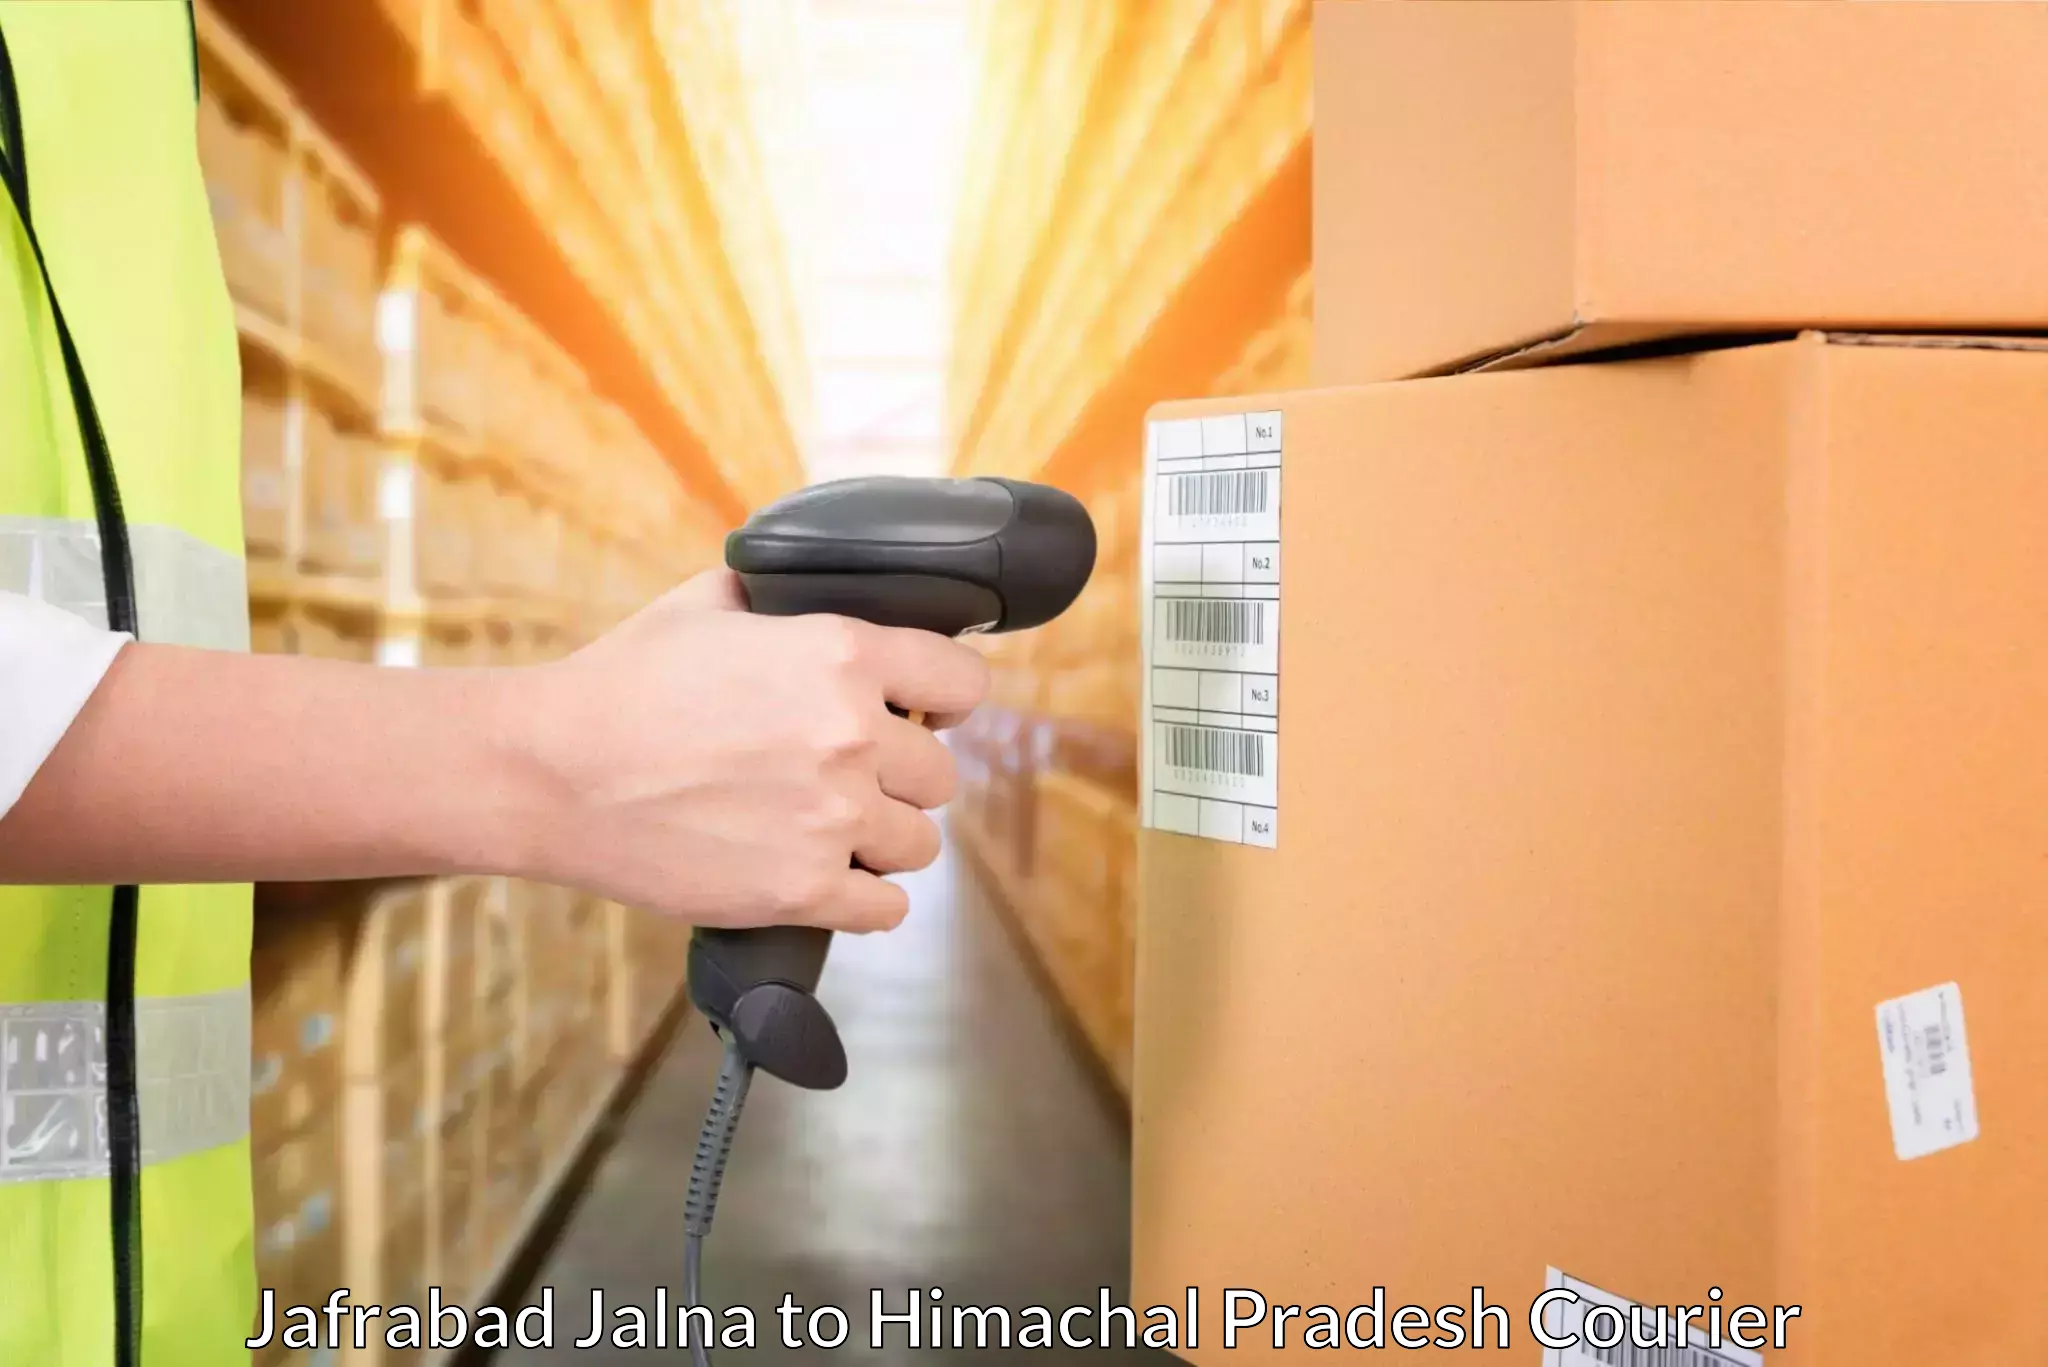 Efficient logistics management Jafrabad Jalna to Joginder Nagar